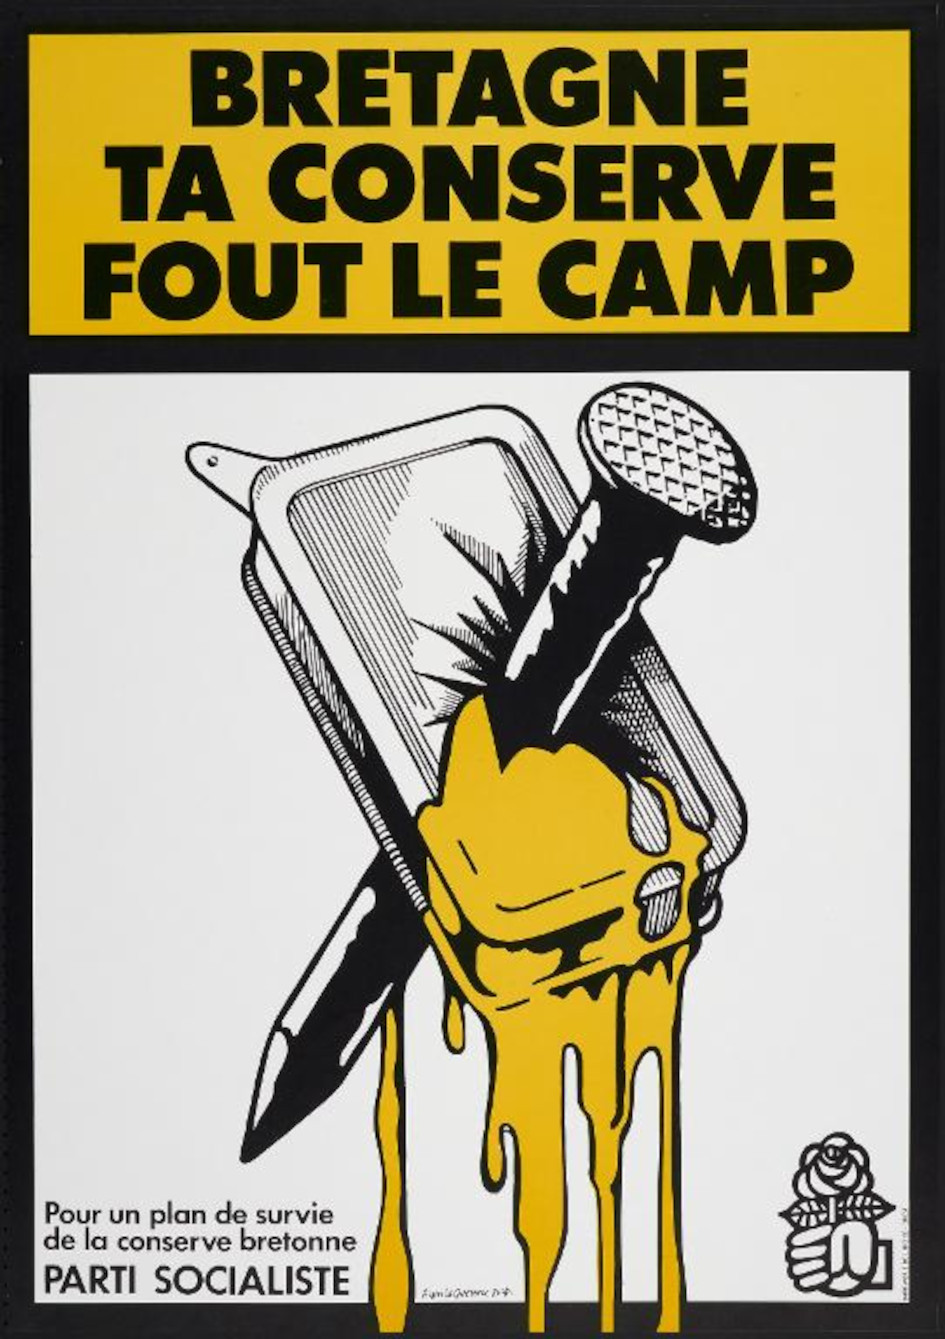 Bretagne ta conserve fout le camp, affiche d'Alain Le Quernec (1978). Collection Musée de Bretagne : 2020.0001.8, ©Tous droits réservés.